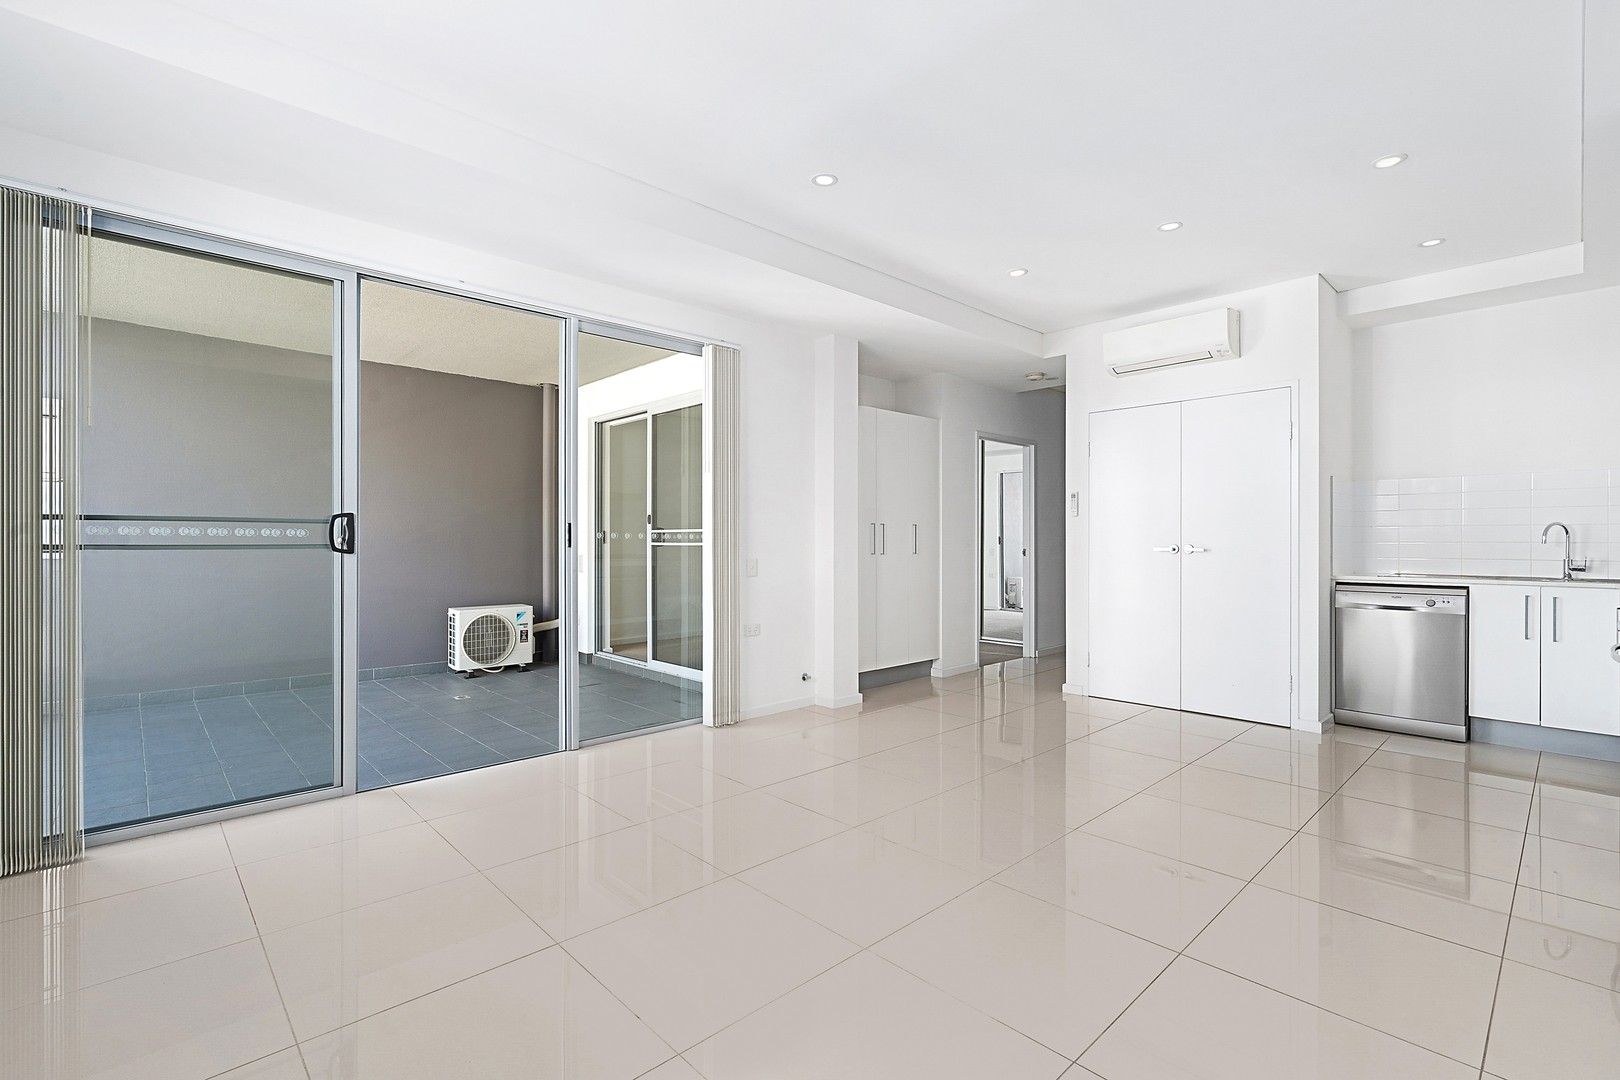 1 bedrooms Apartment / Unit / Flat in 207/11 Junia Avenue TOONGABBIE NSW, 2146